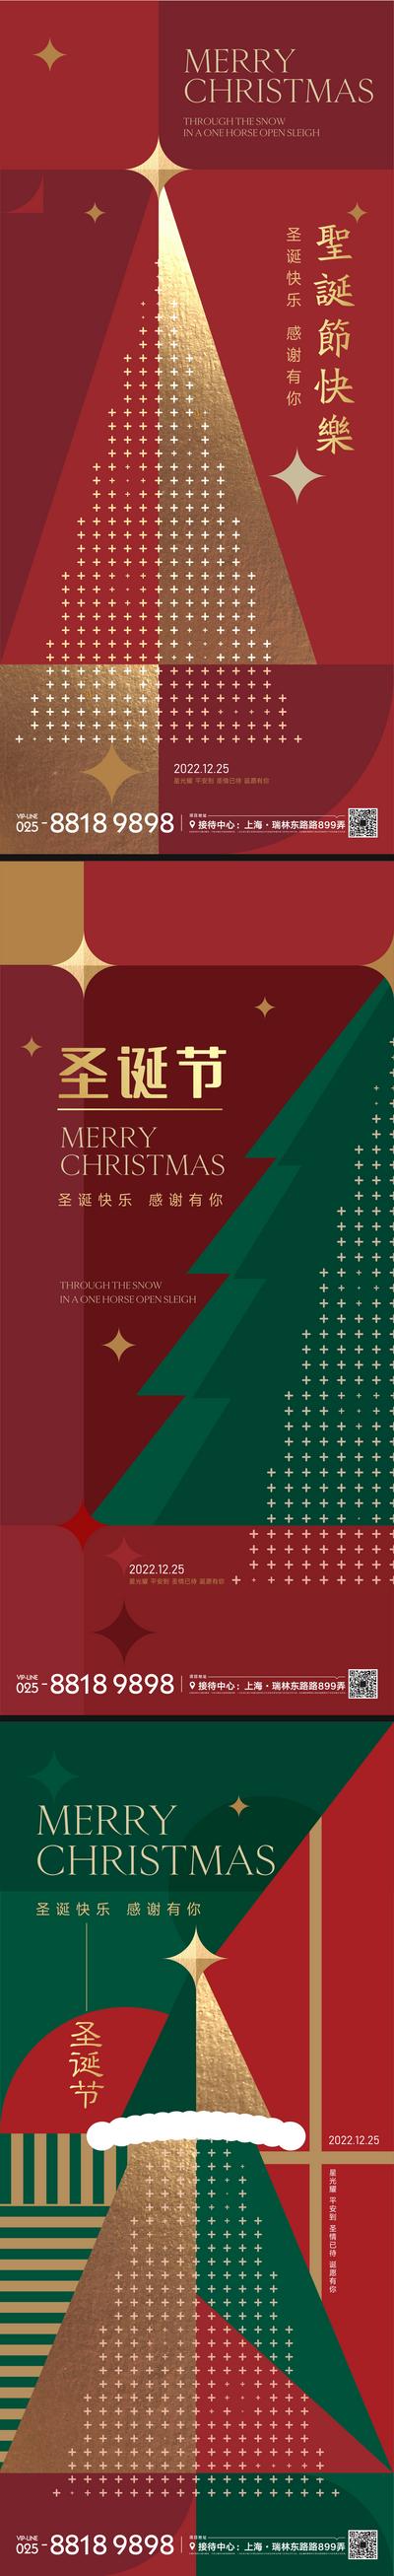 【南门网】海报 公历节日 圣诞节  红金 圣诞树 星星 平安夜 版式 几何图形